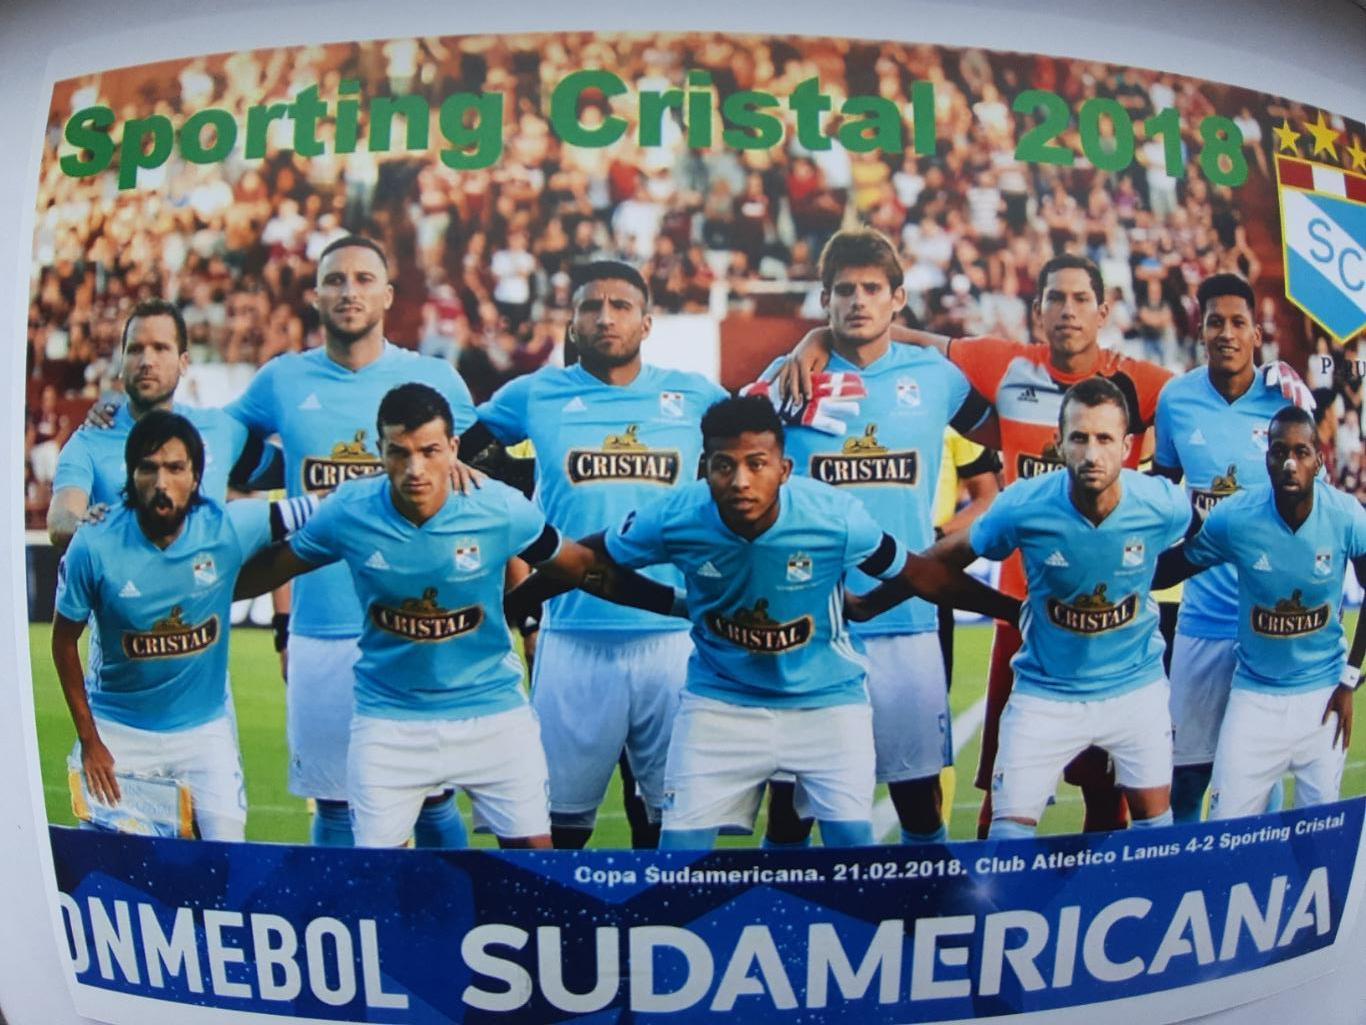 Sporting Cristal (Peru). 2018